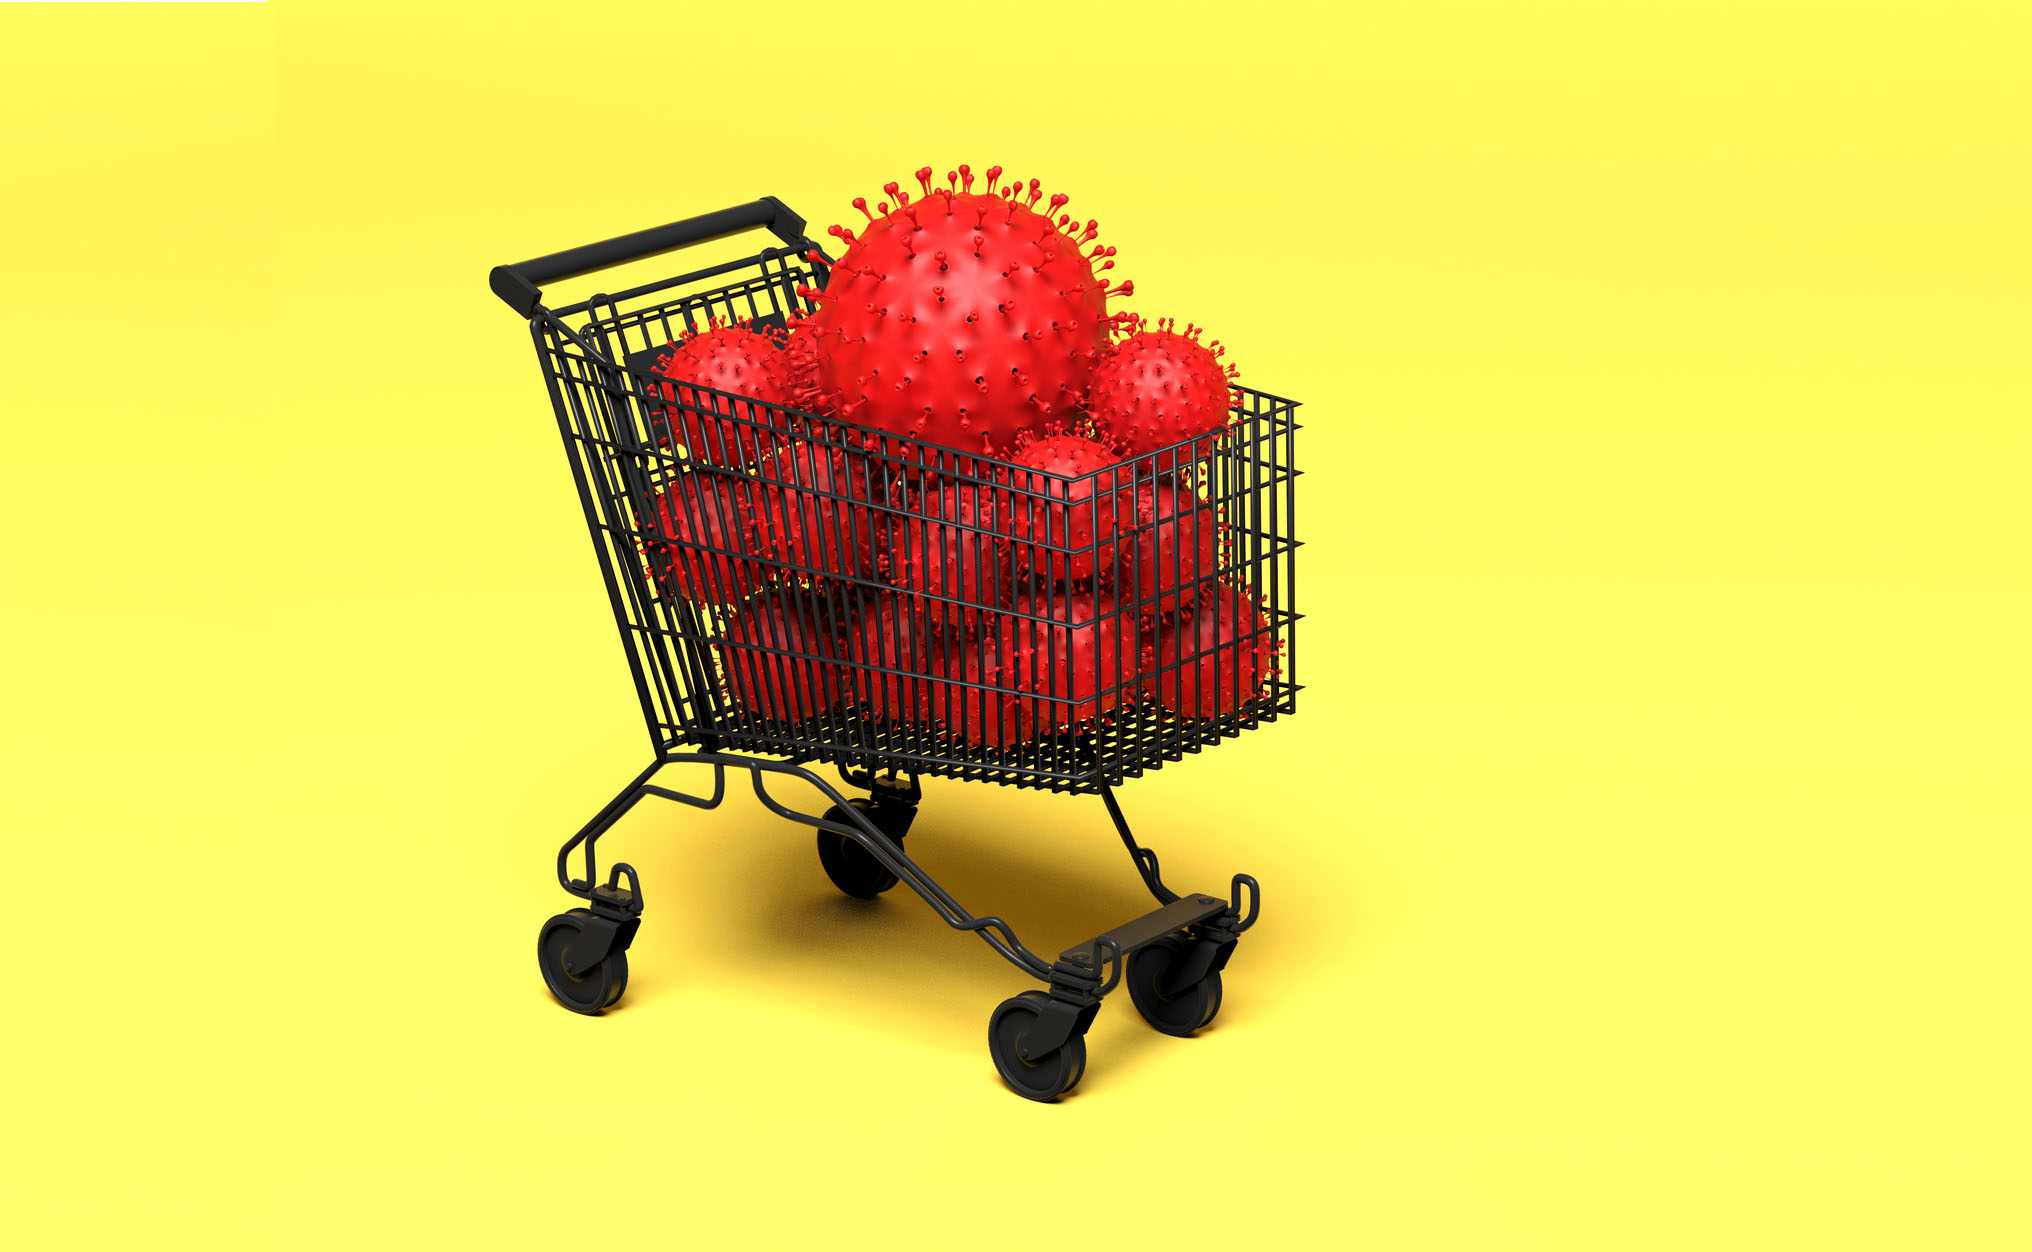 Carrinho de supermercado carregado de vírus: impacto na economia